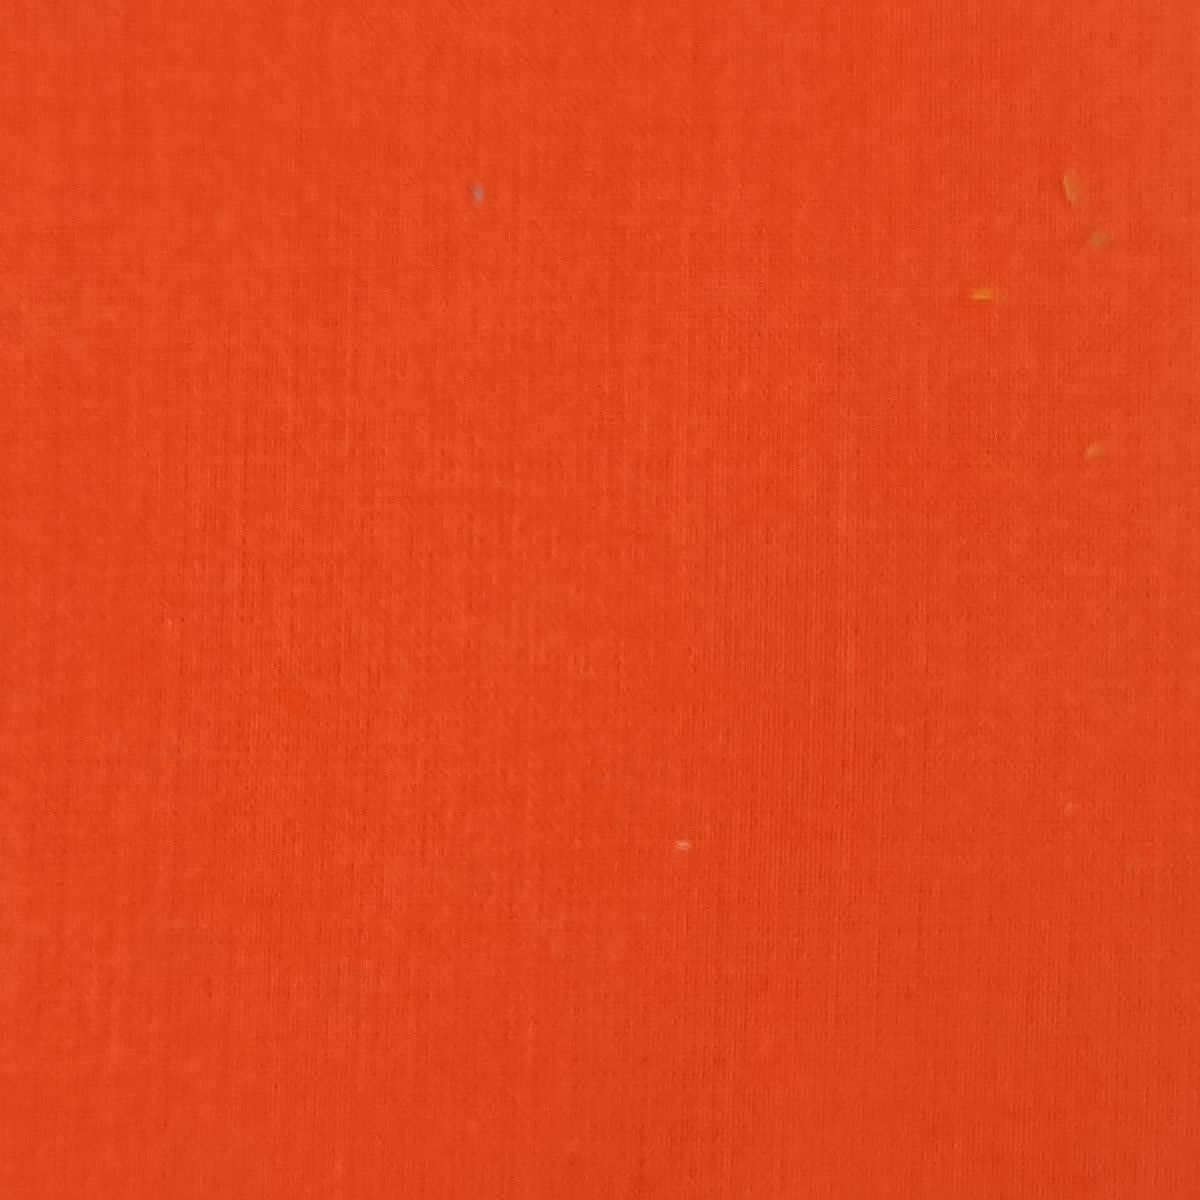 60'S Voil Woven Fabric-Cinnabar